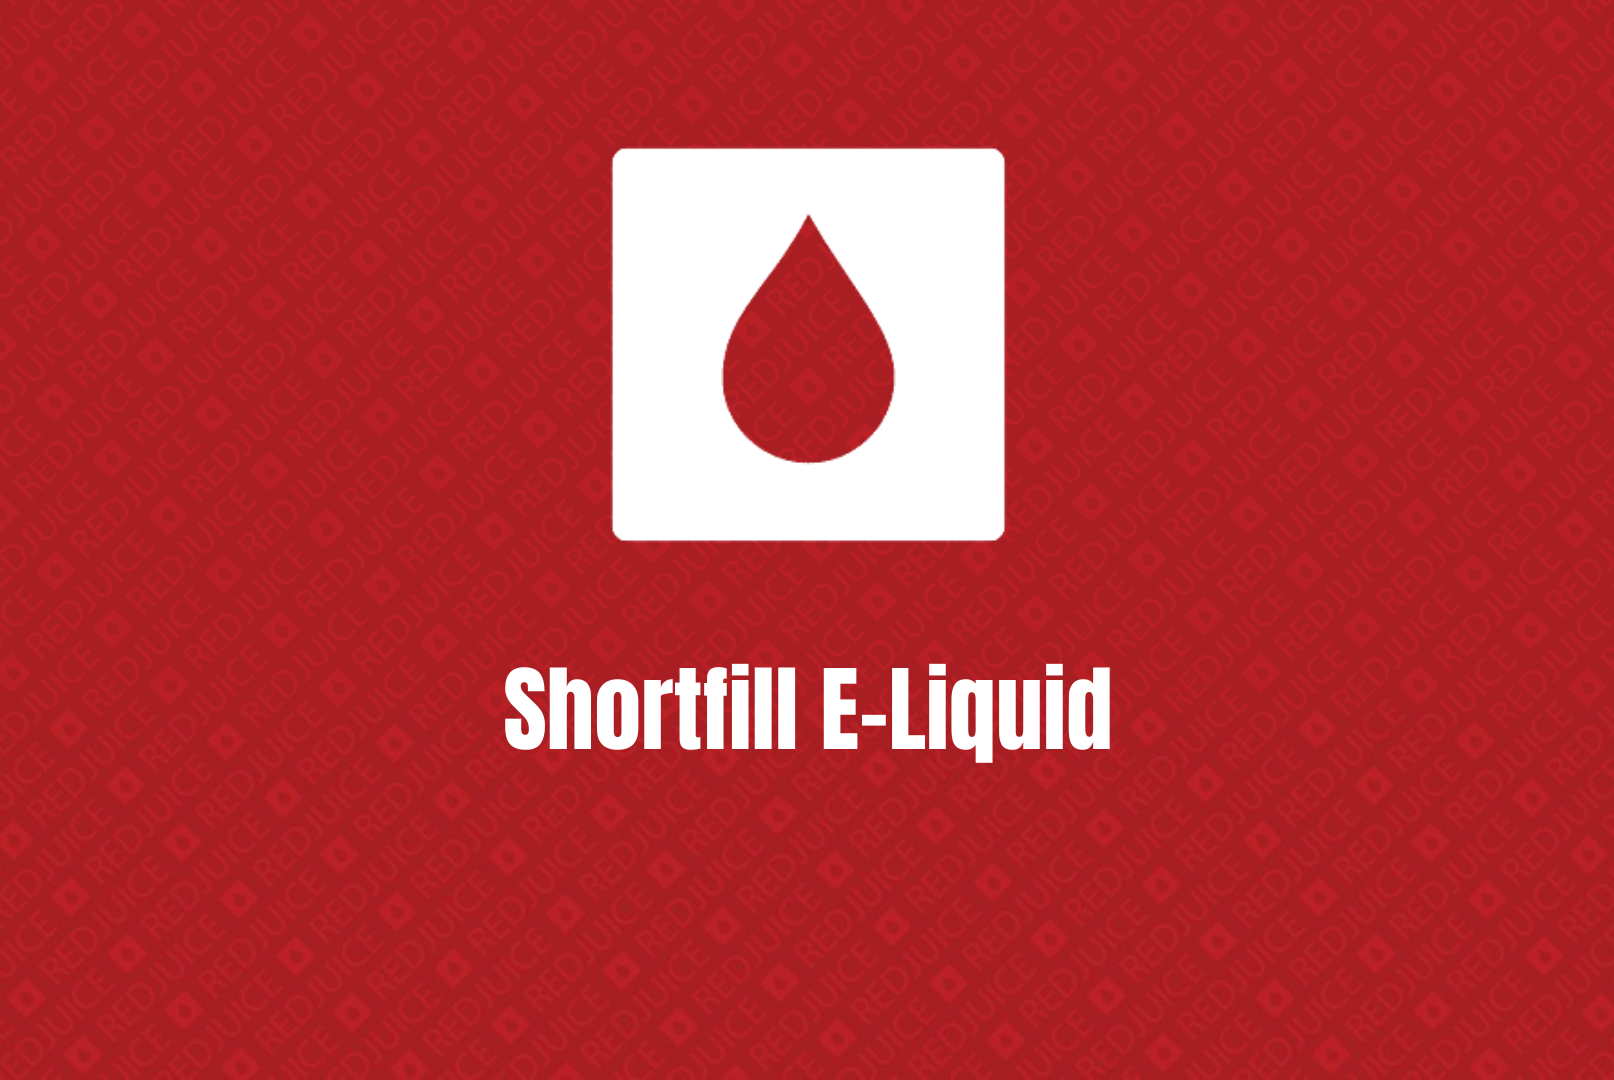 Shortfill E-Liquid Guide